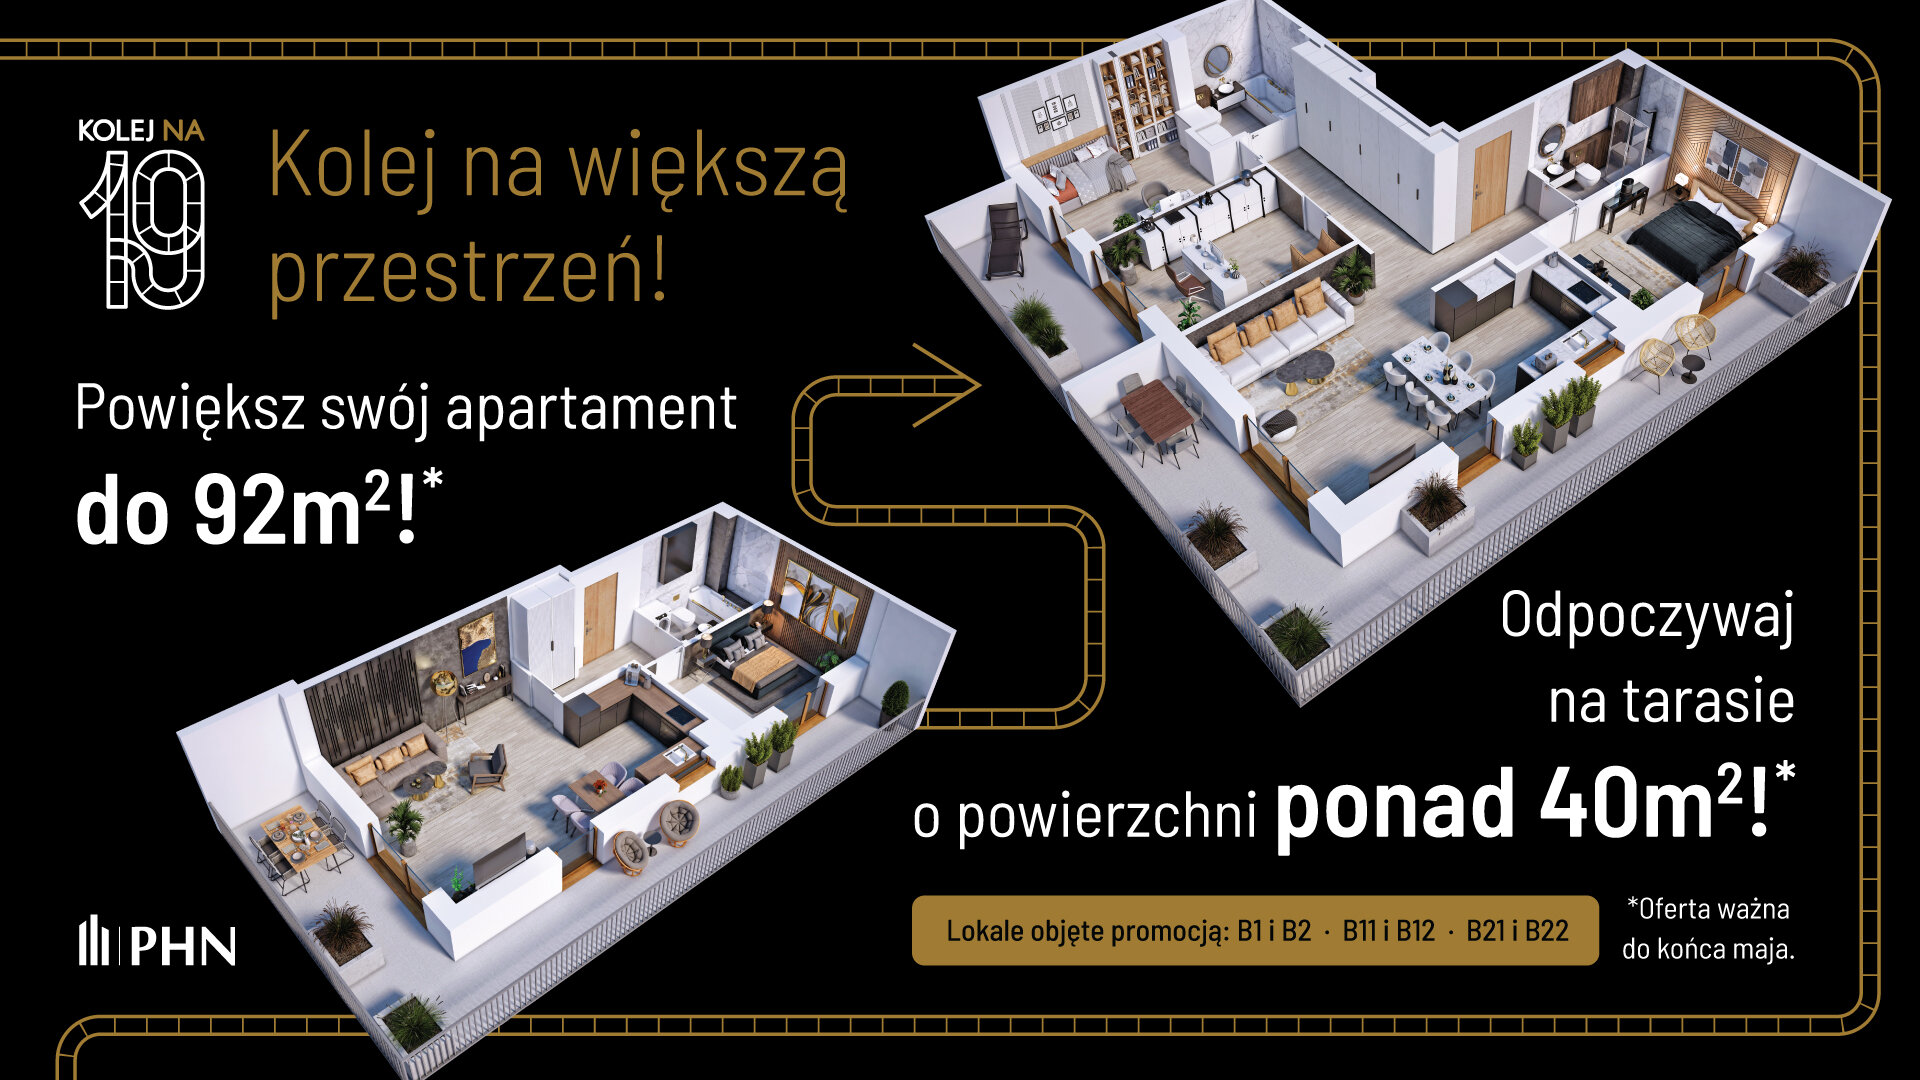 Wiosenna promocja w KOLEJ NA 19 - Apartament, 3 pokoje, Warszawa,57.80 m²,1 057 971 zł